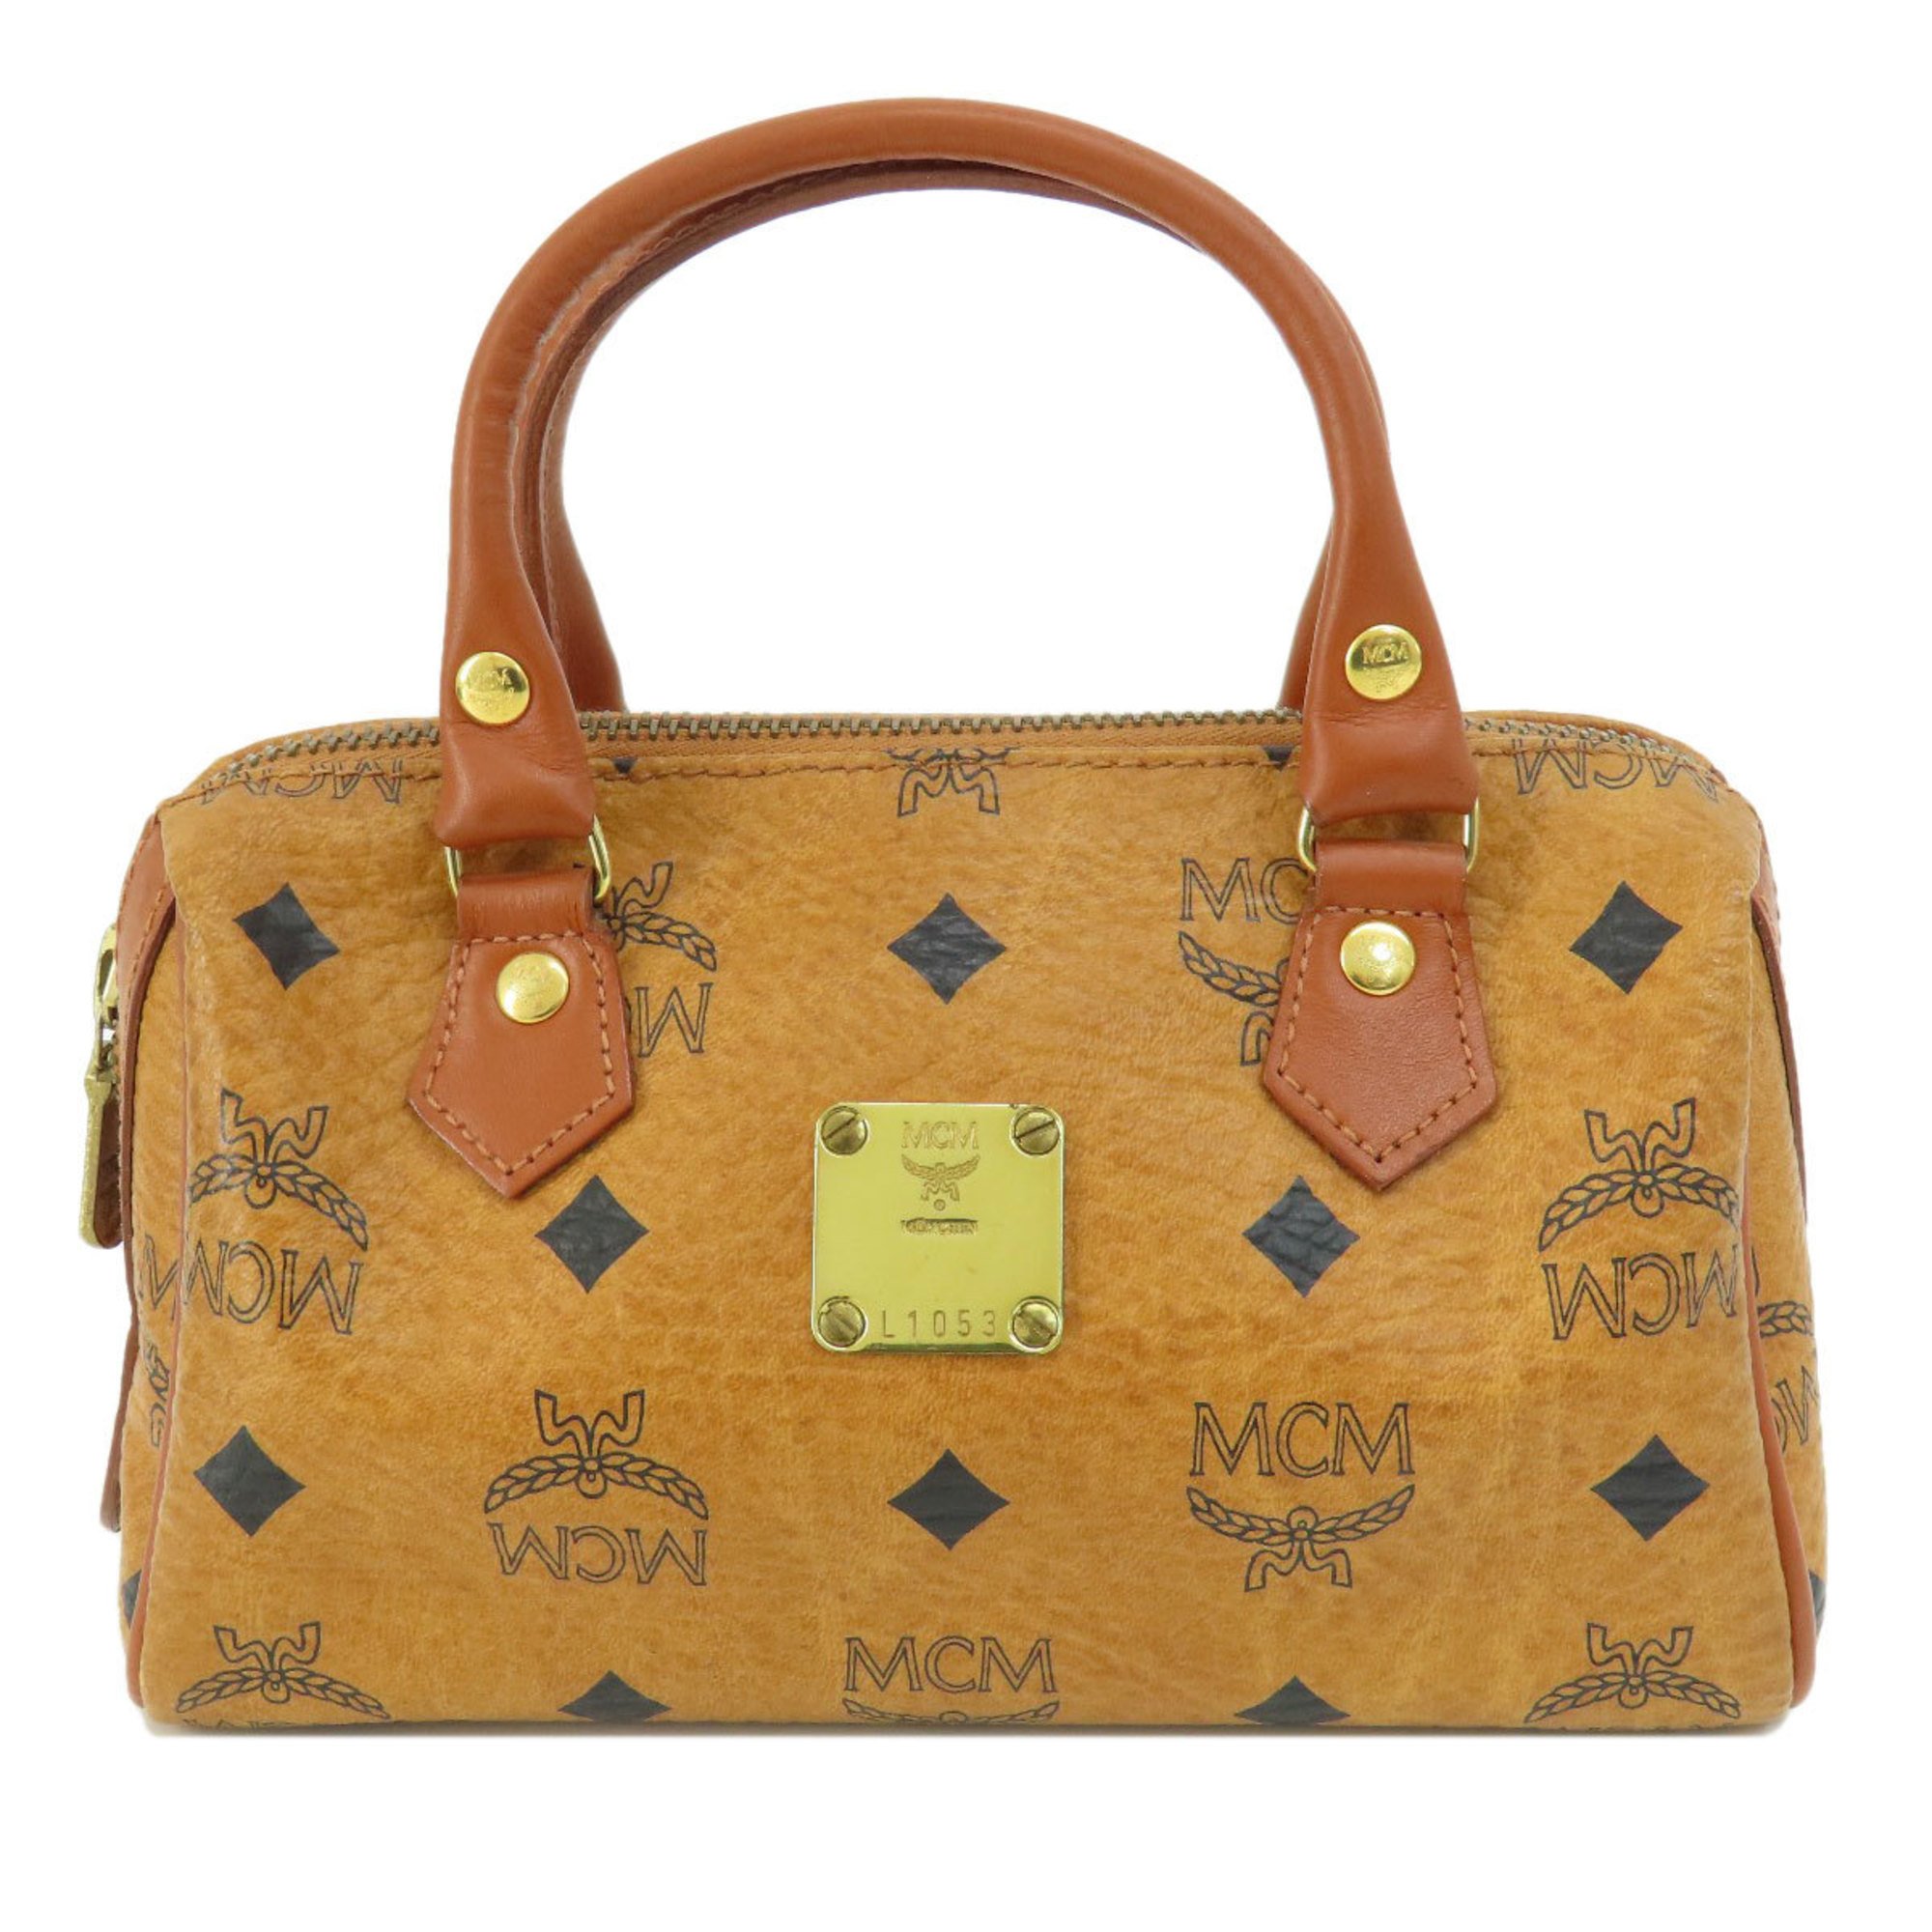 MCM Bags Handbags Women's